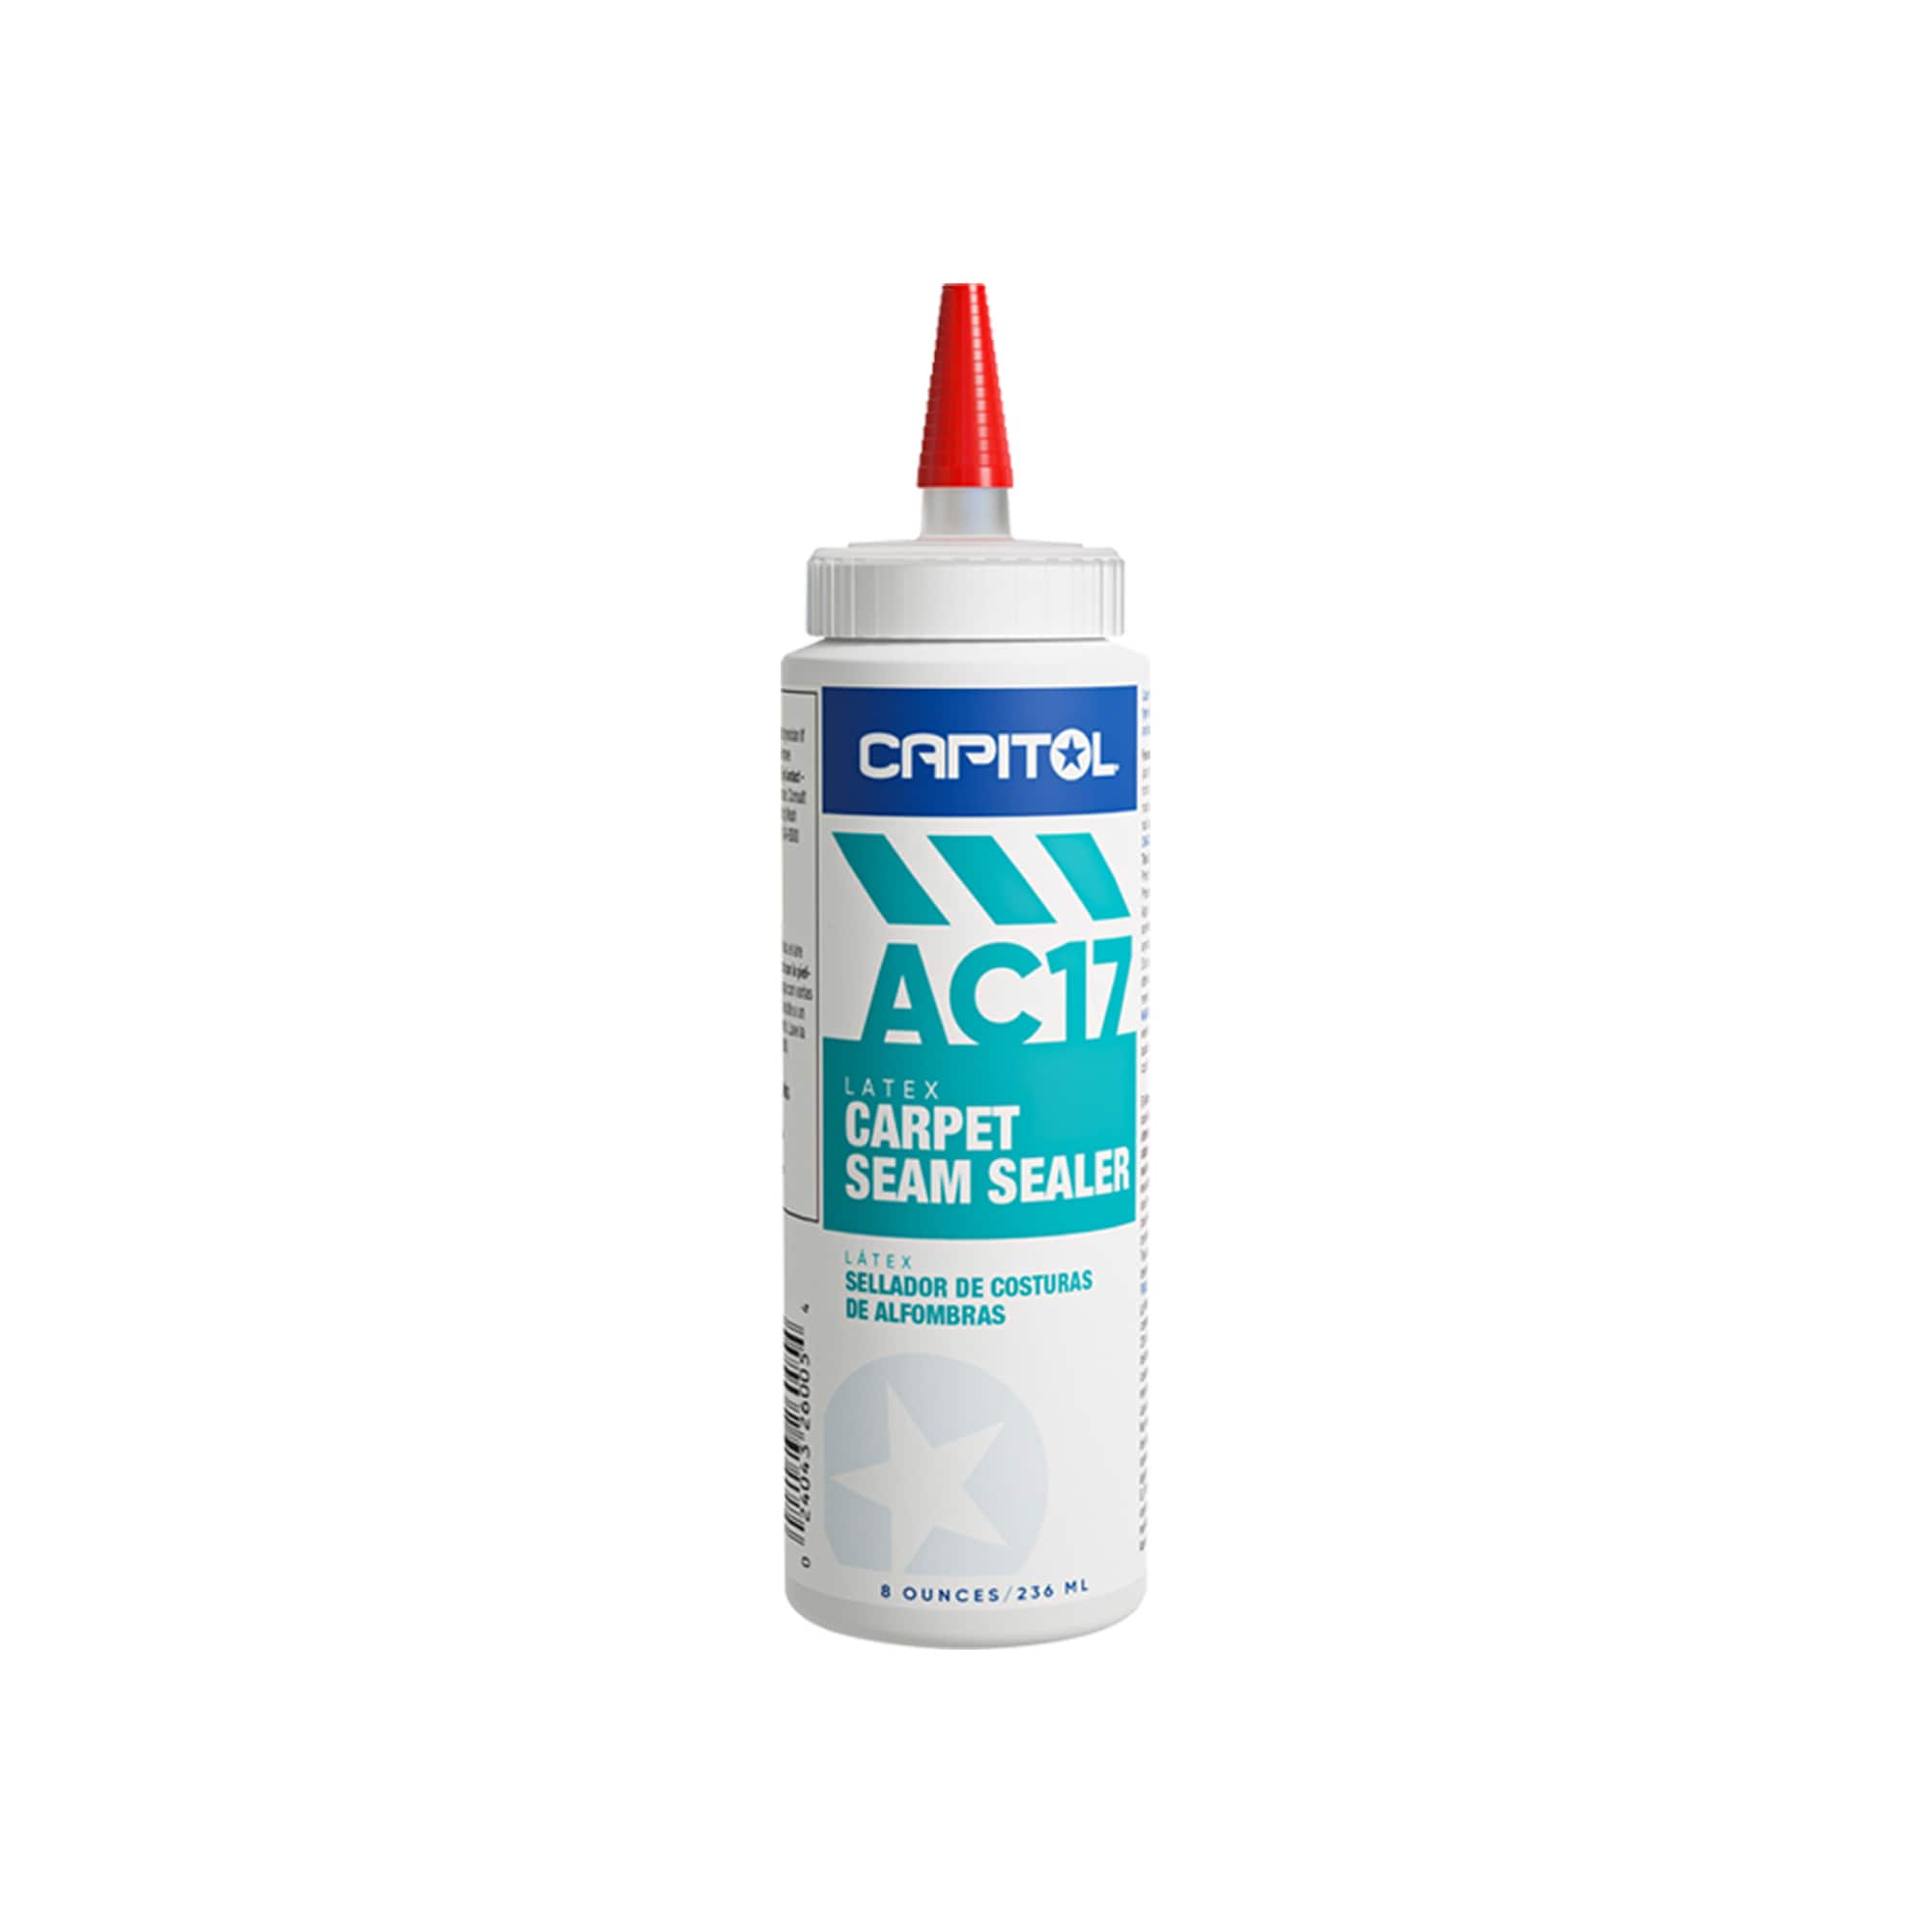 Capitol AC17 Carpet Flooring Glue (8-oz) in the Flooring Adhesives